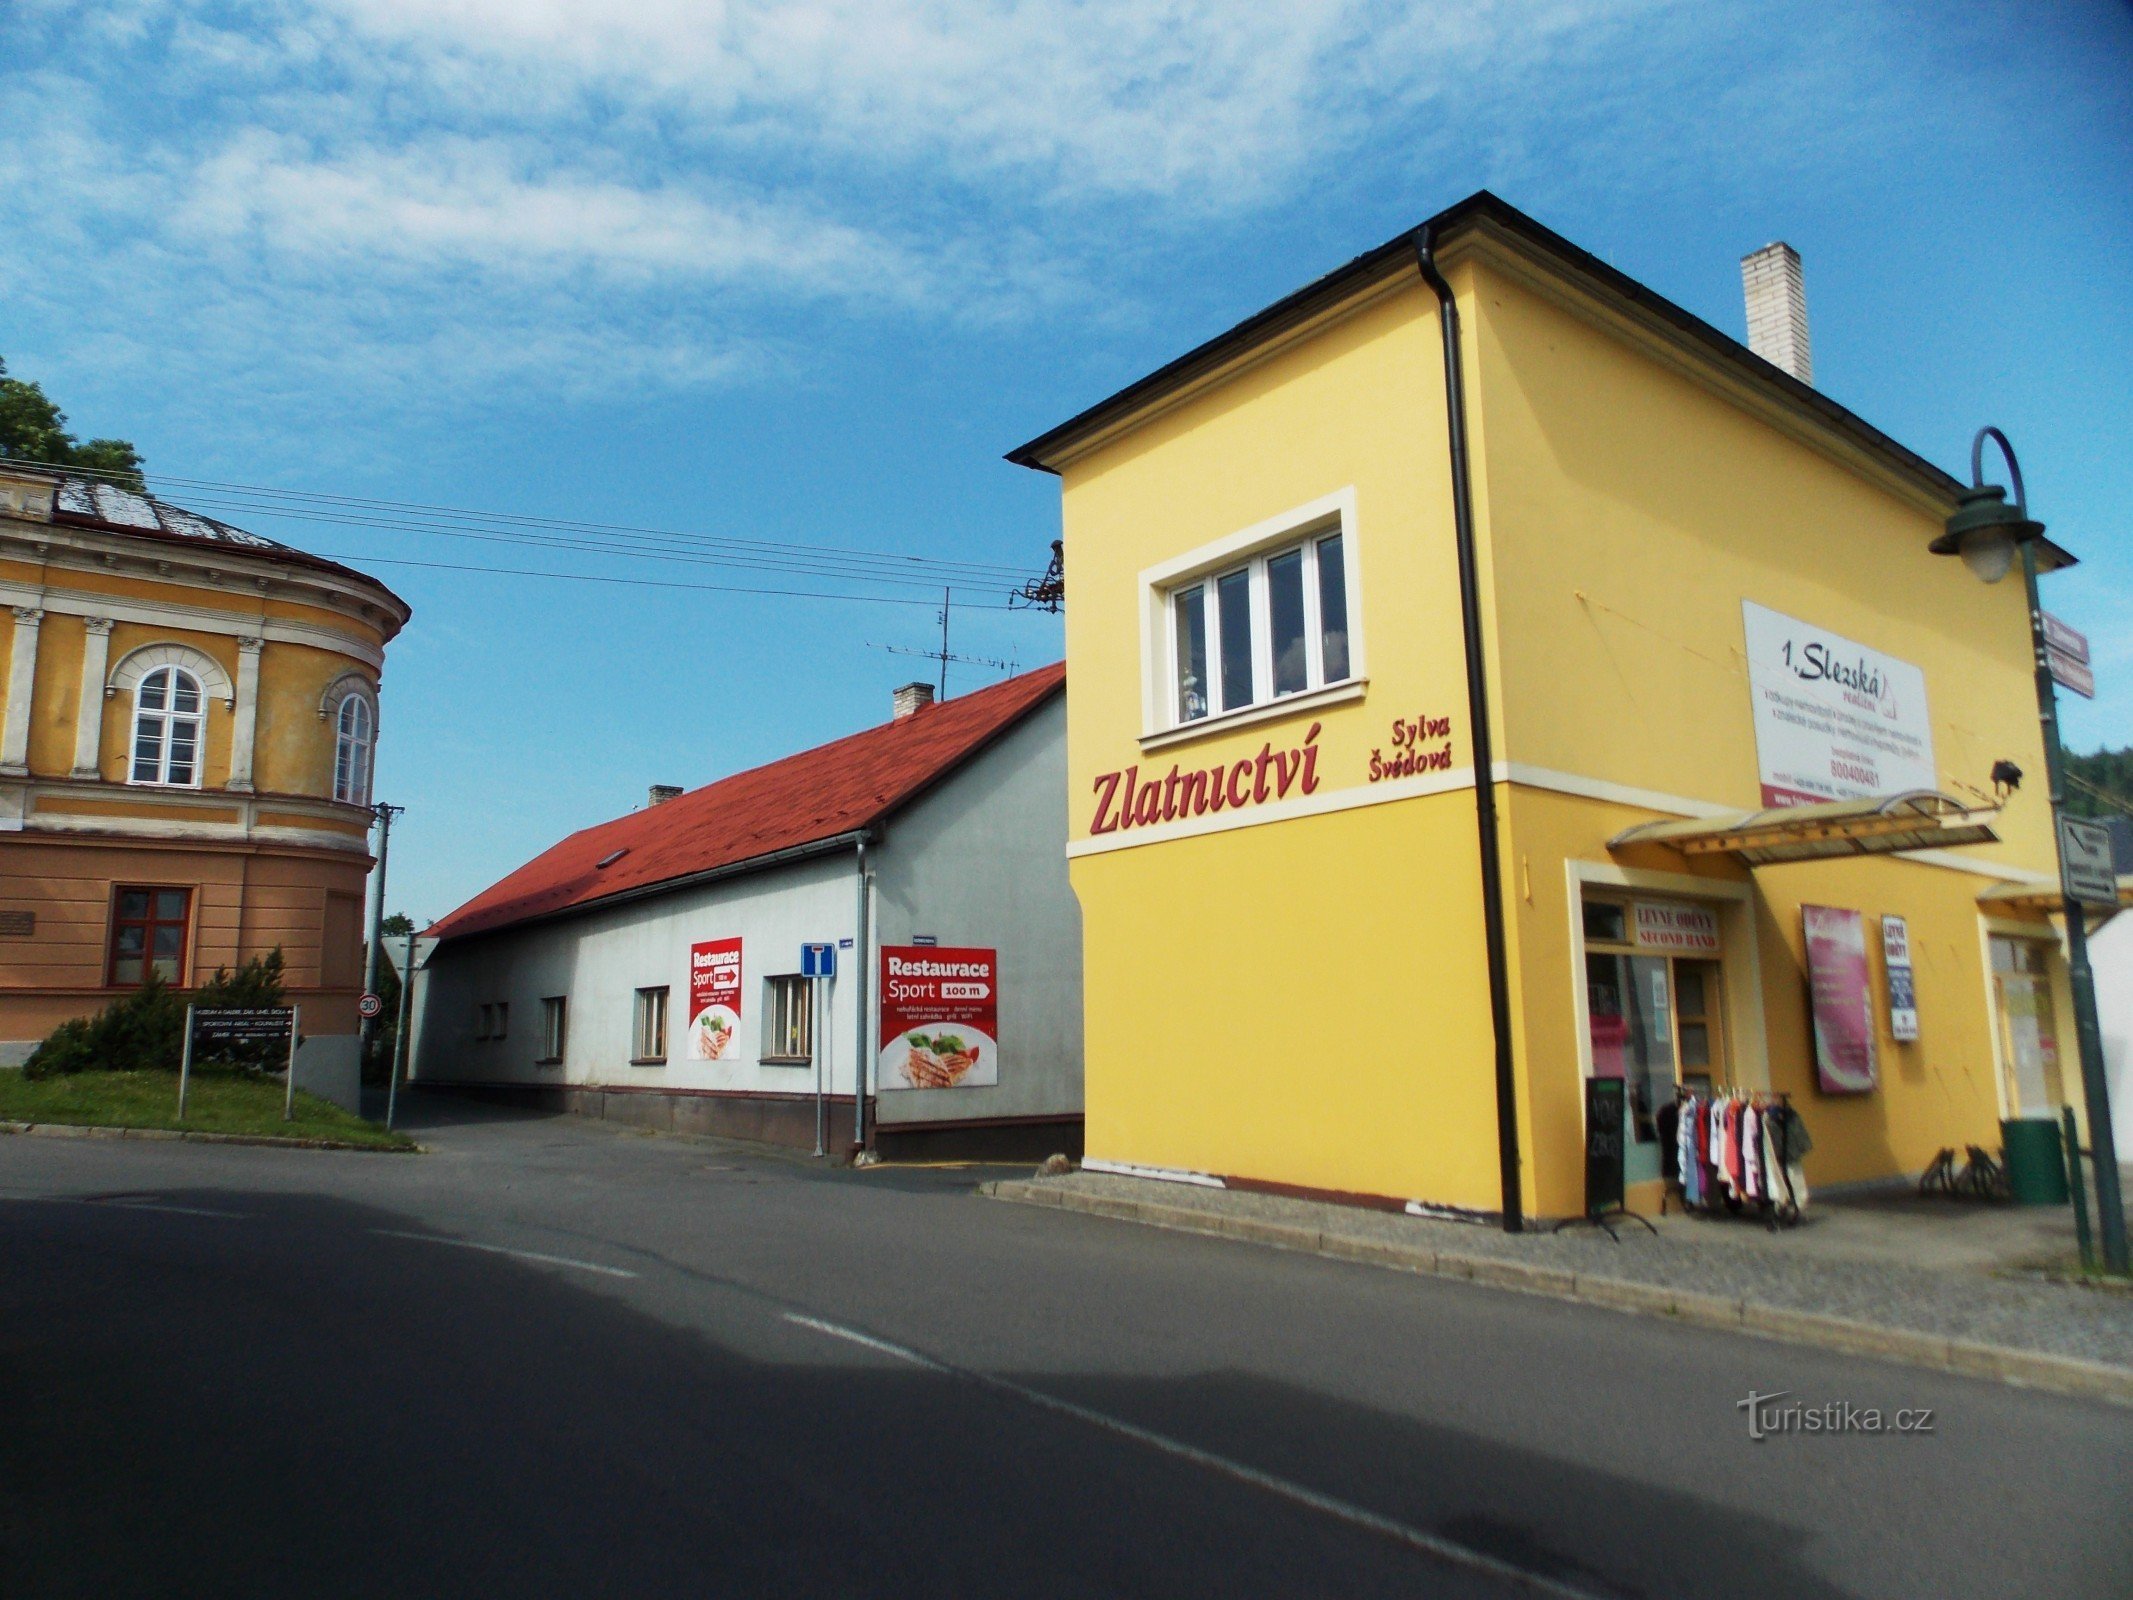 Wędrówka po ulicy Zámecká w Hradcu nad Moravicí